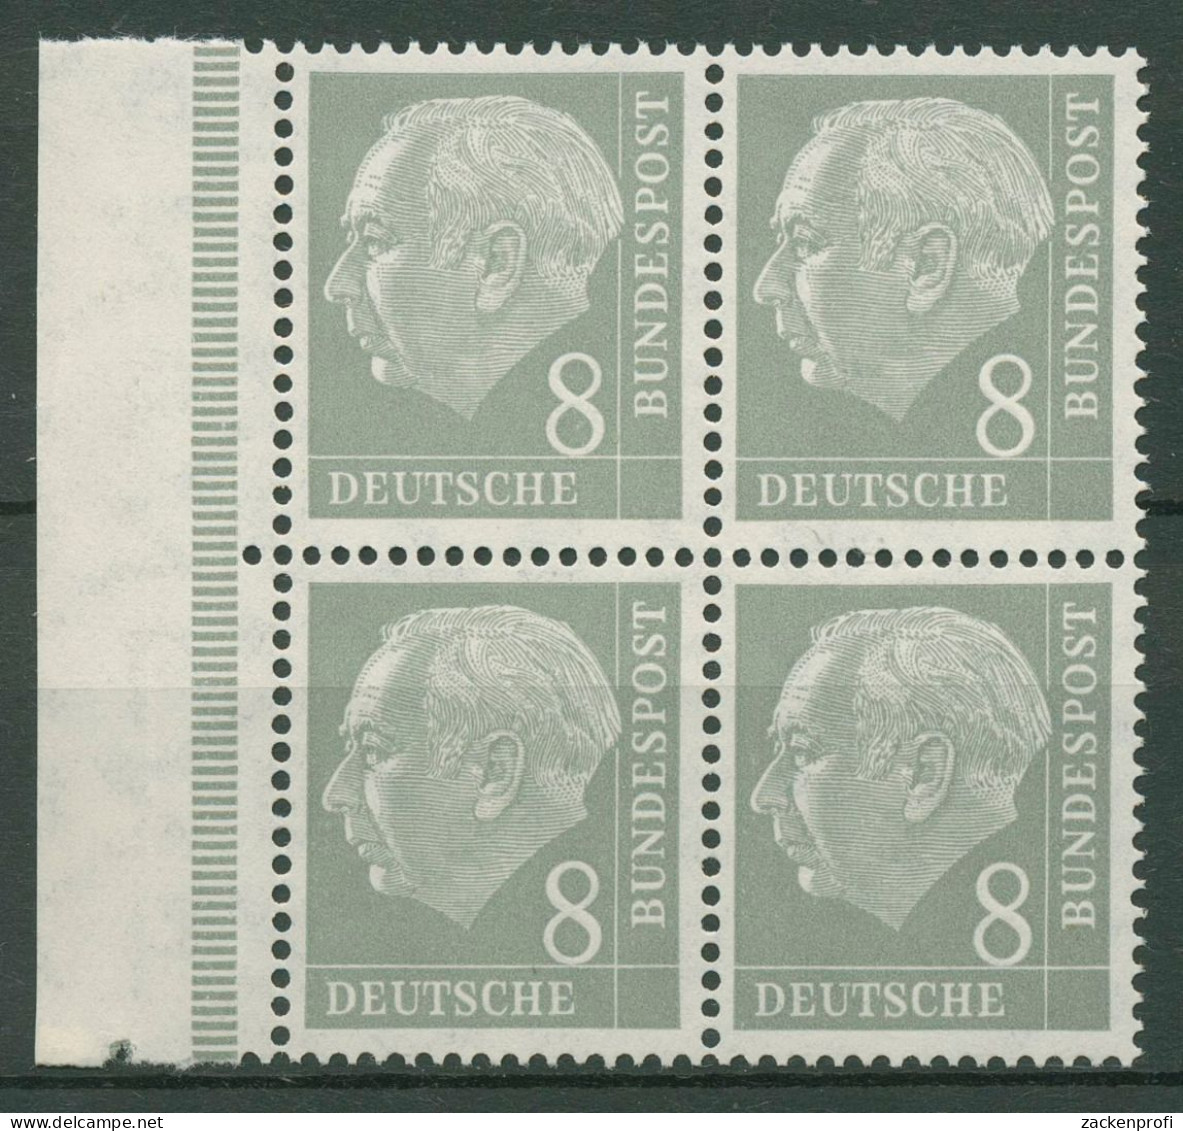 Bund 1954 Heuss I Bogenmarke 182 X Ww 4er-Block Rand Links Postfrisch - Nuovi